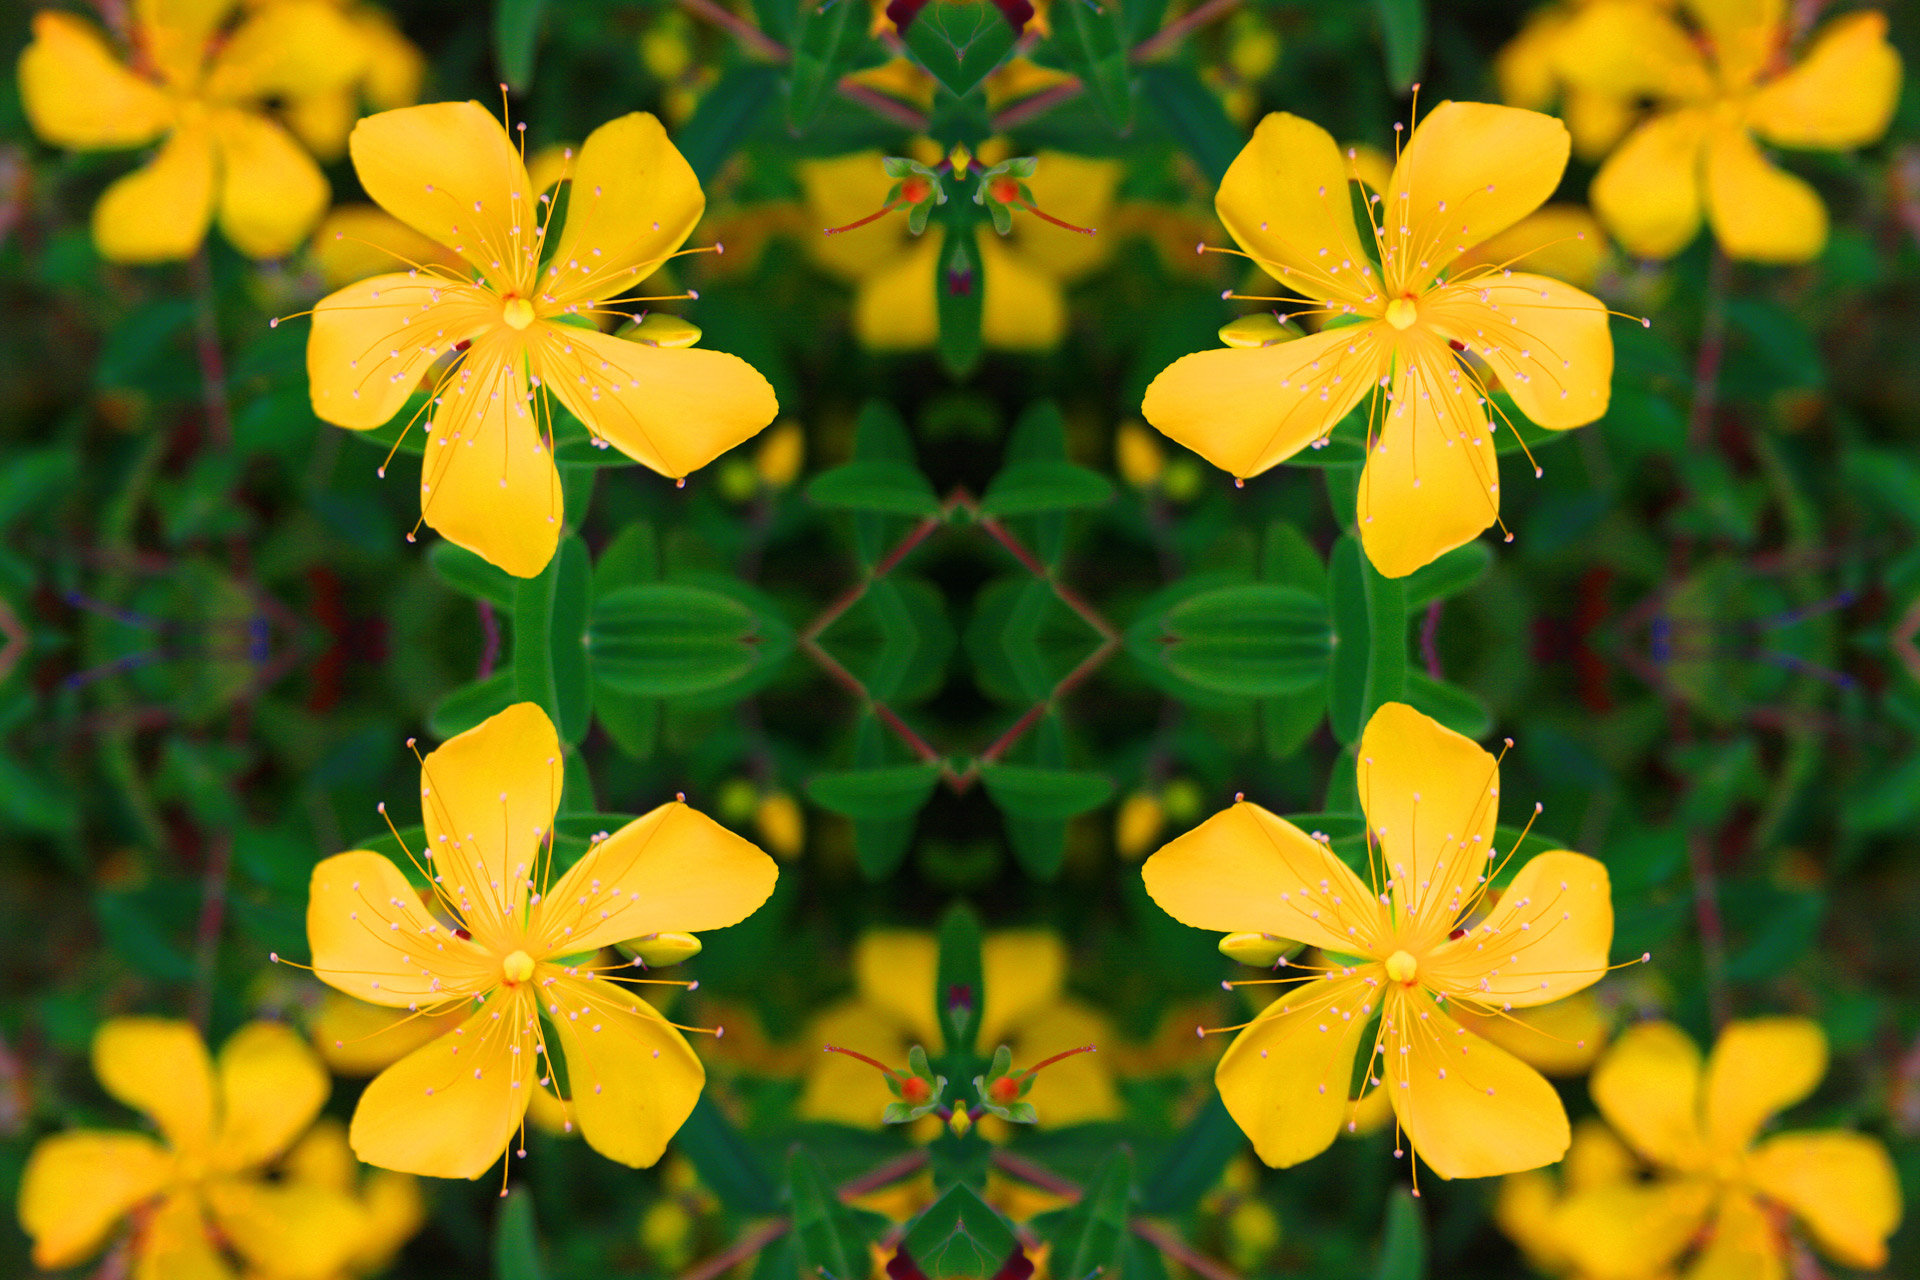 Hypericum floare repeta